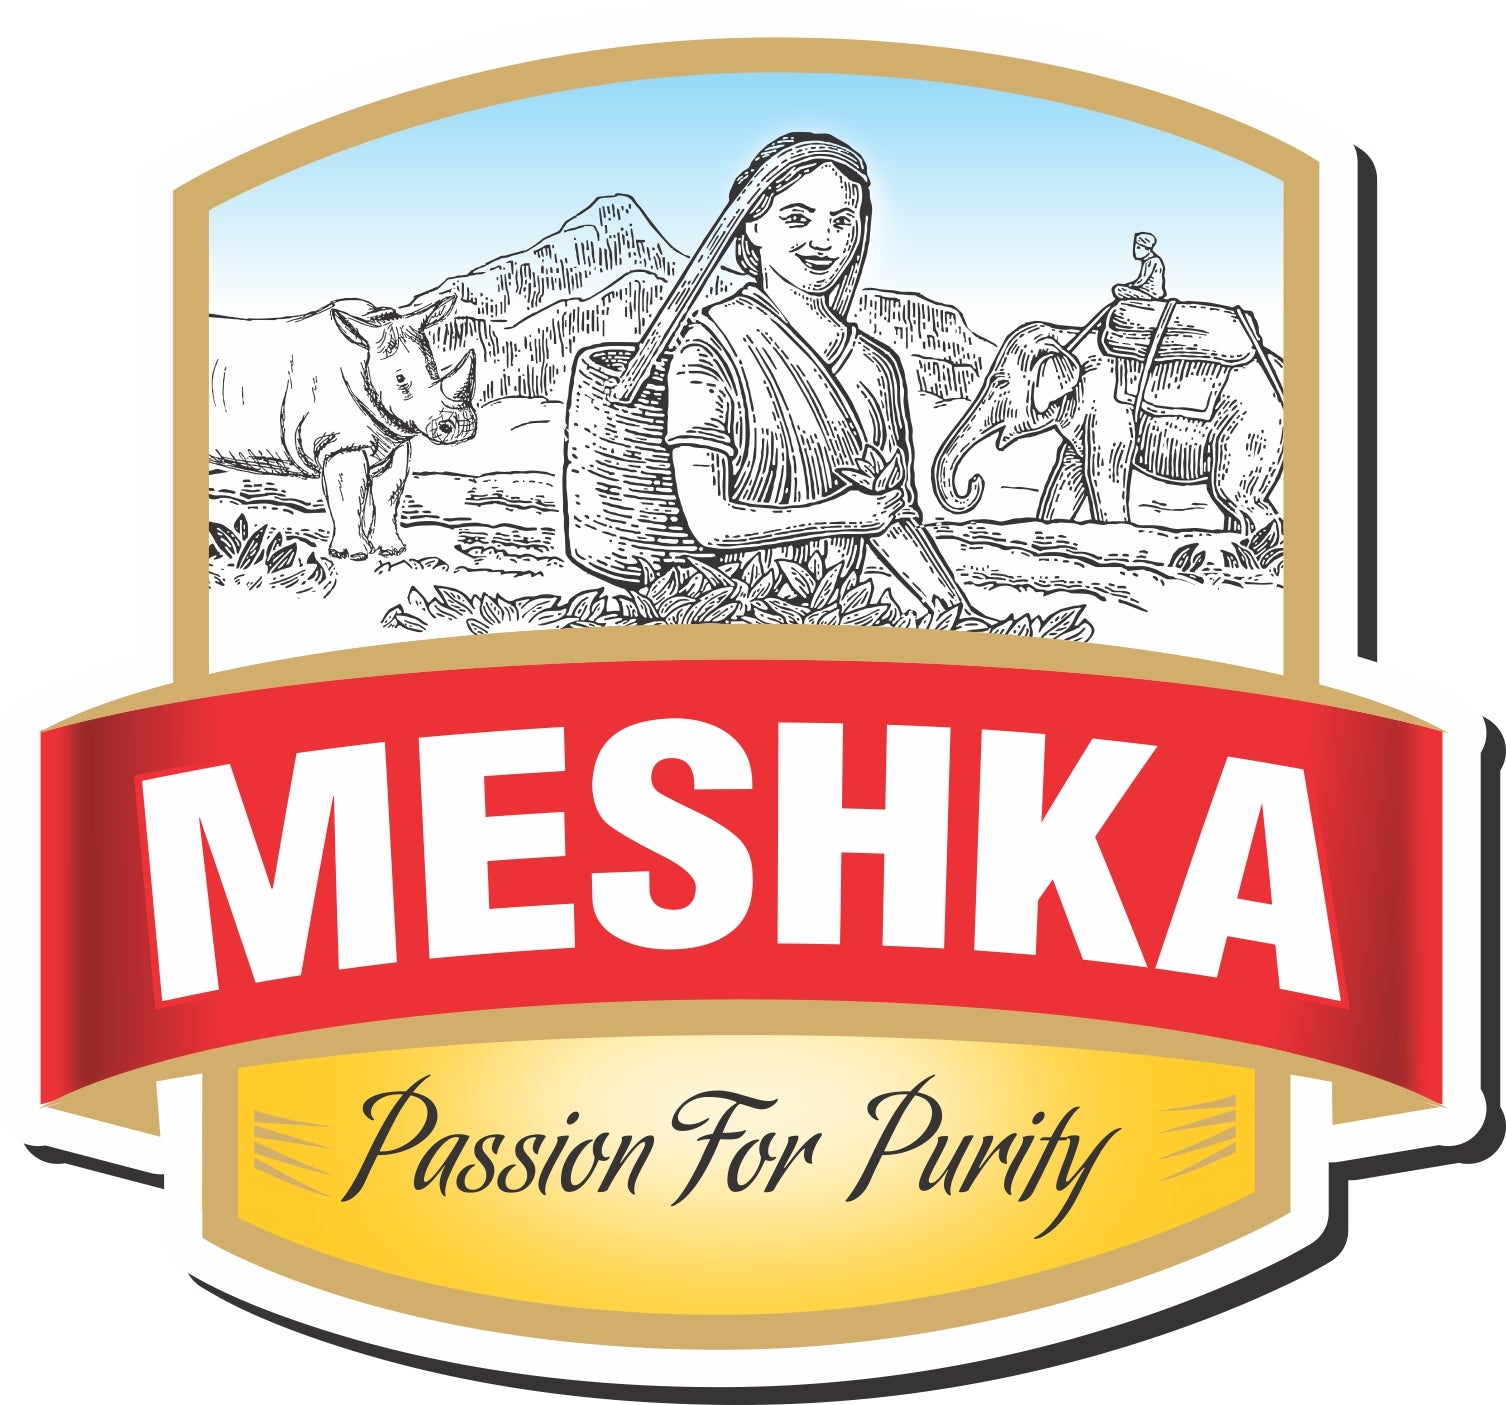 Meshka Logo